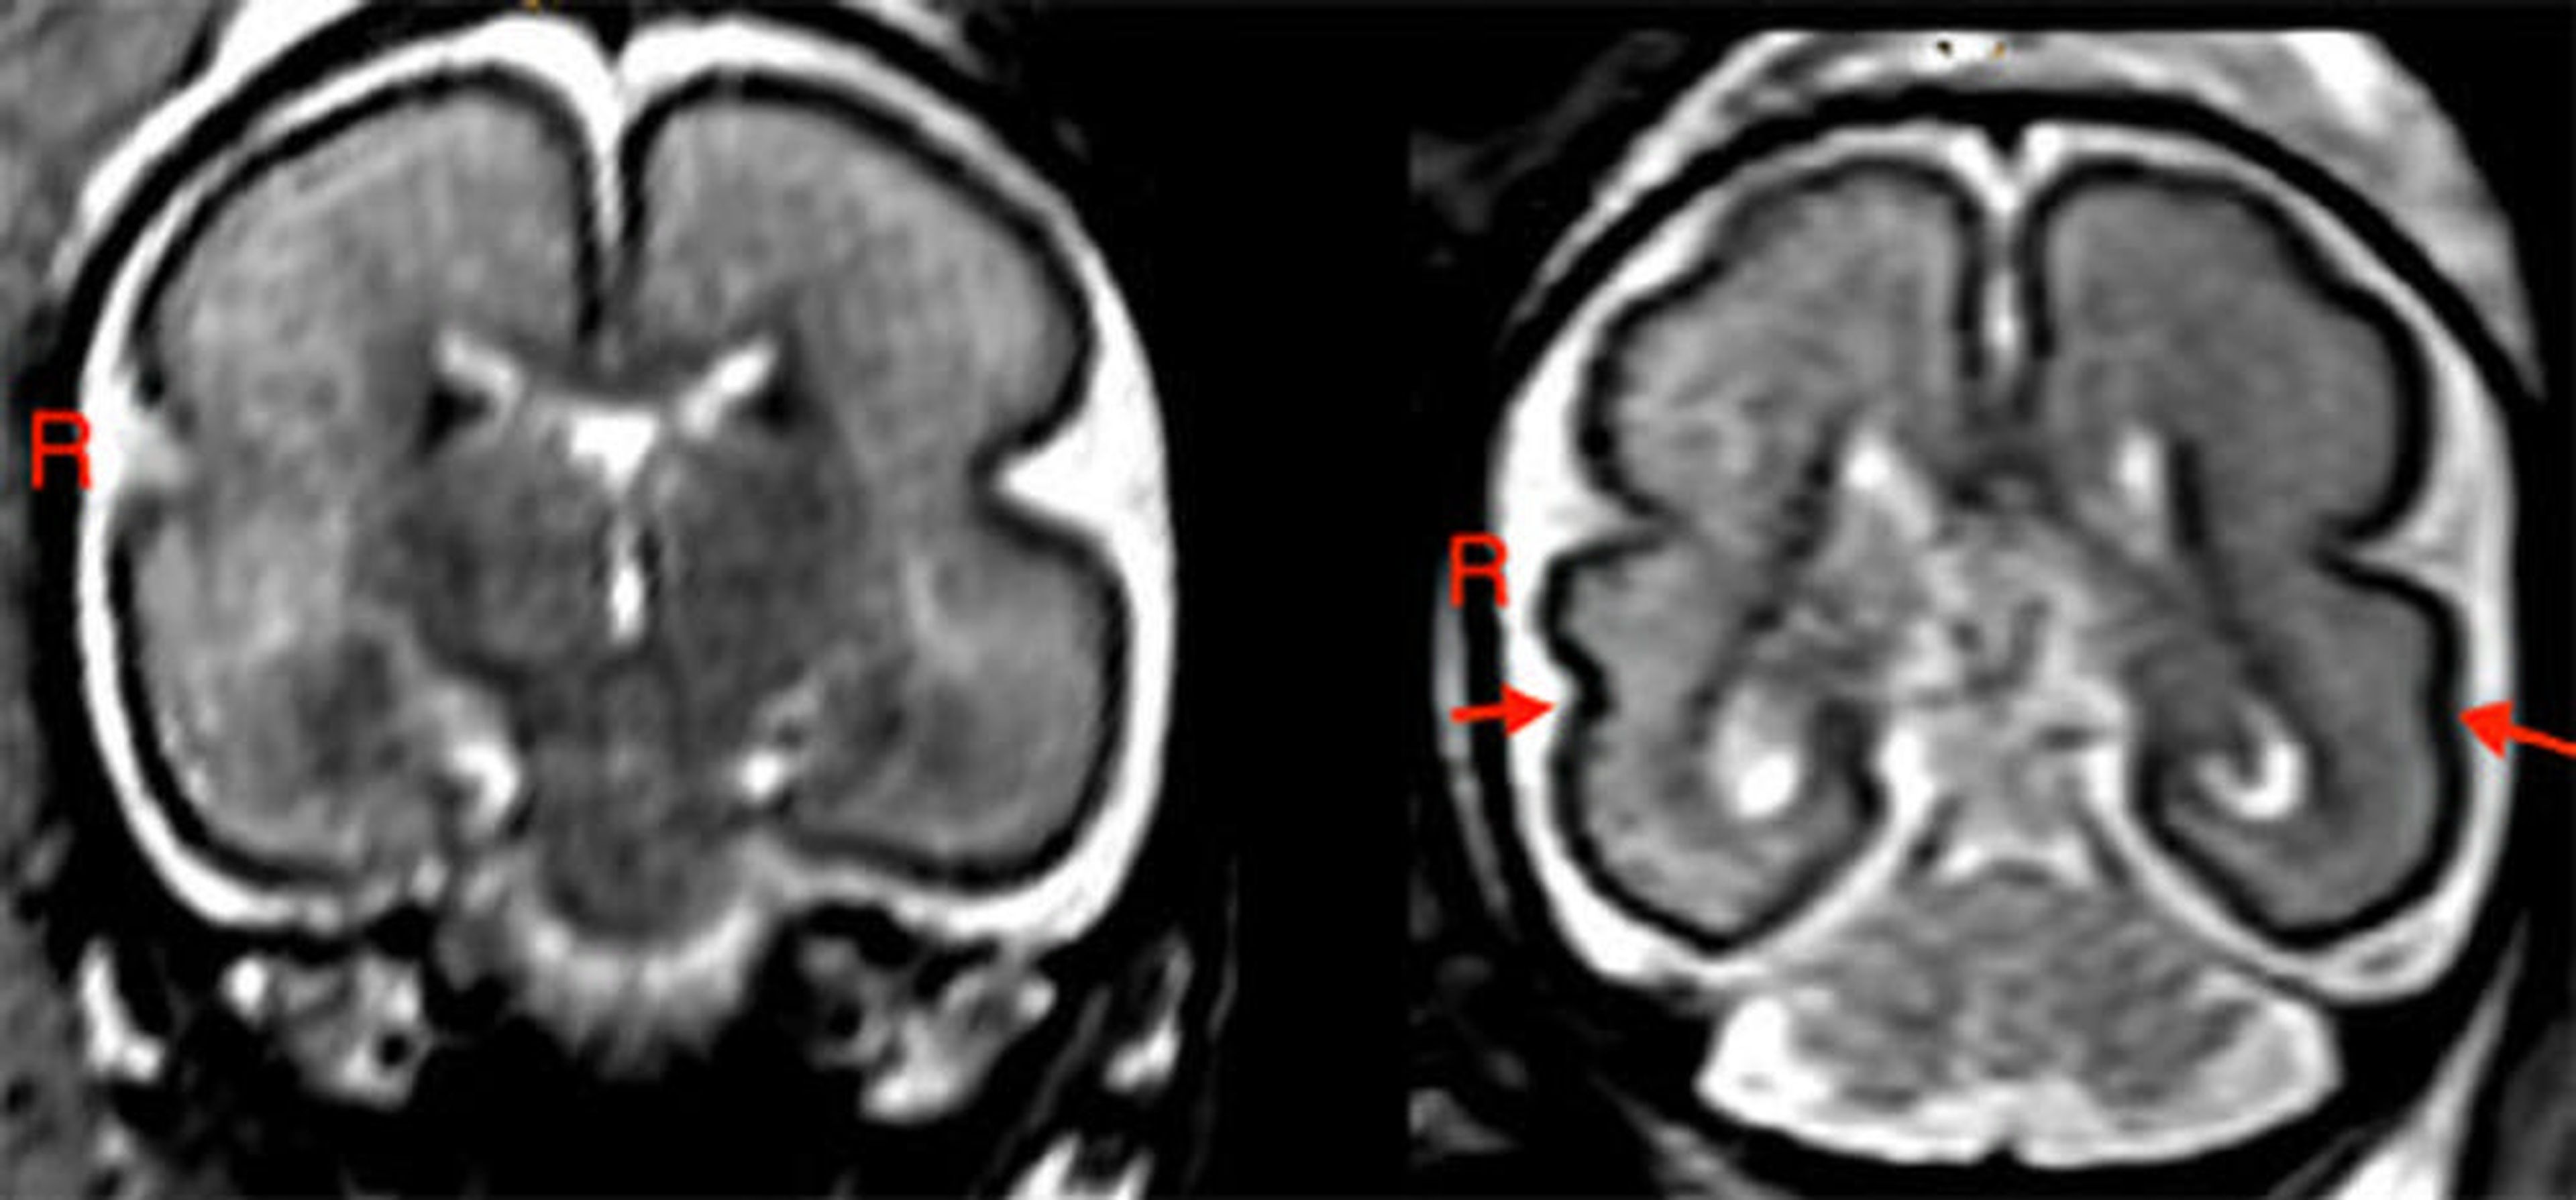 Un cerebro fetal expuesto al alcohol (izquierda) tiene una corteza más lisa en los lóbulos frontoparietal y temporal. En el control sano (derecha), el surco temporal superior (señalado por flechas) son más definidos.